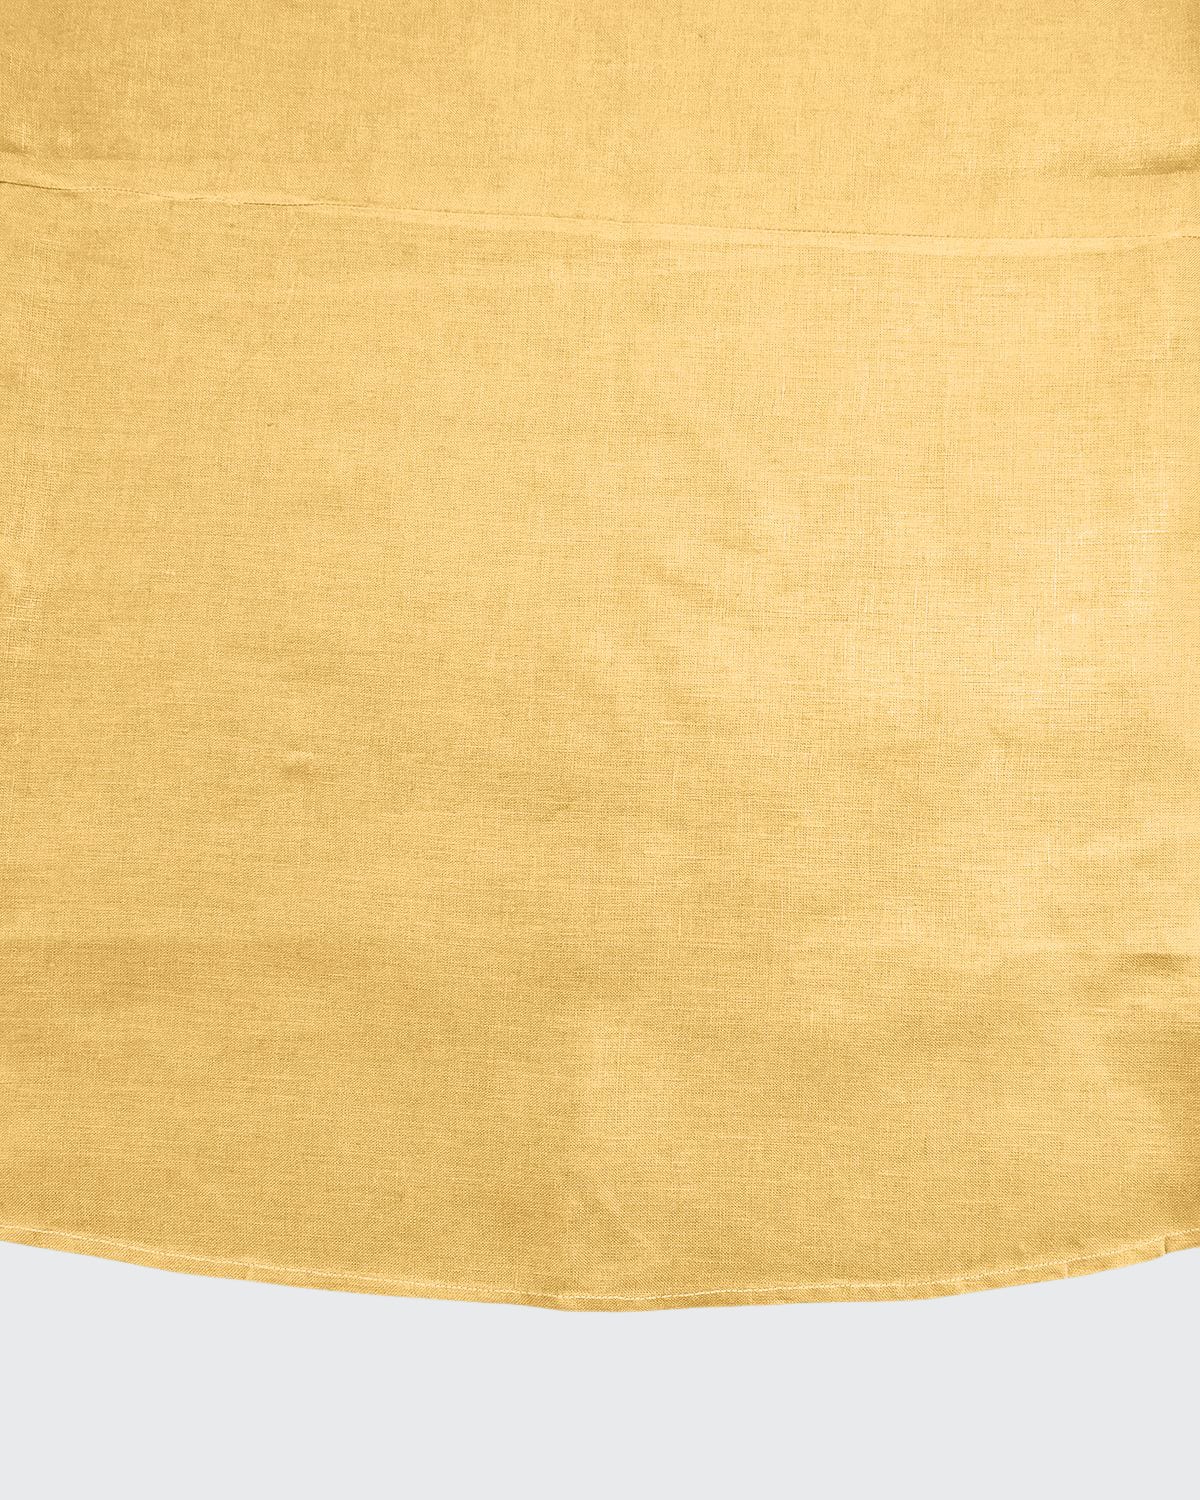 Sferra Hemstitch Round Tablecloth, 90"dia. In Butter